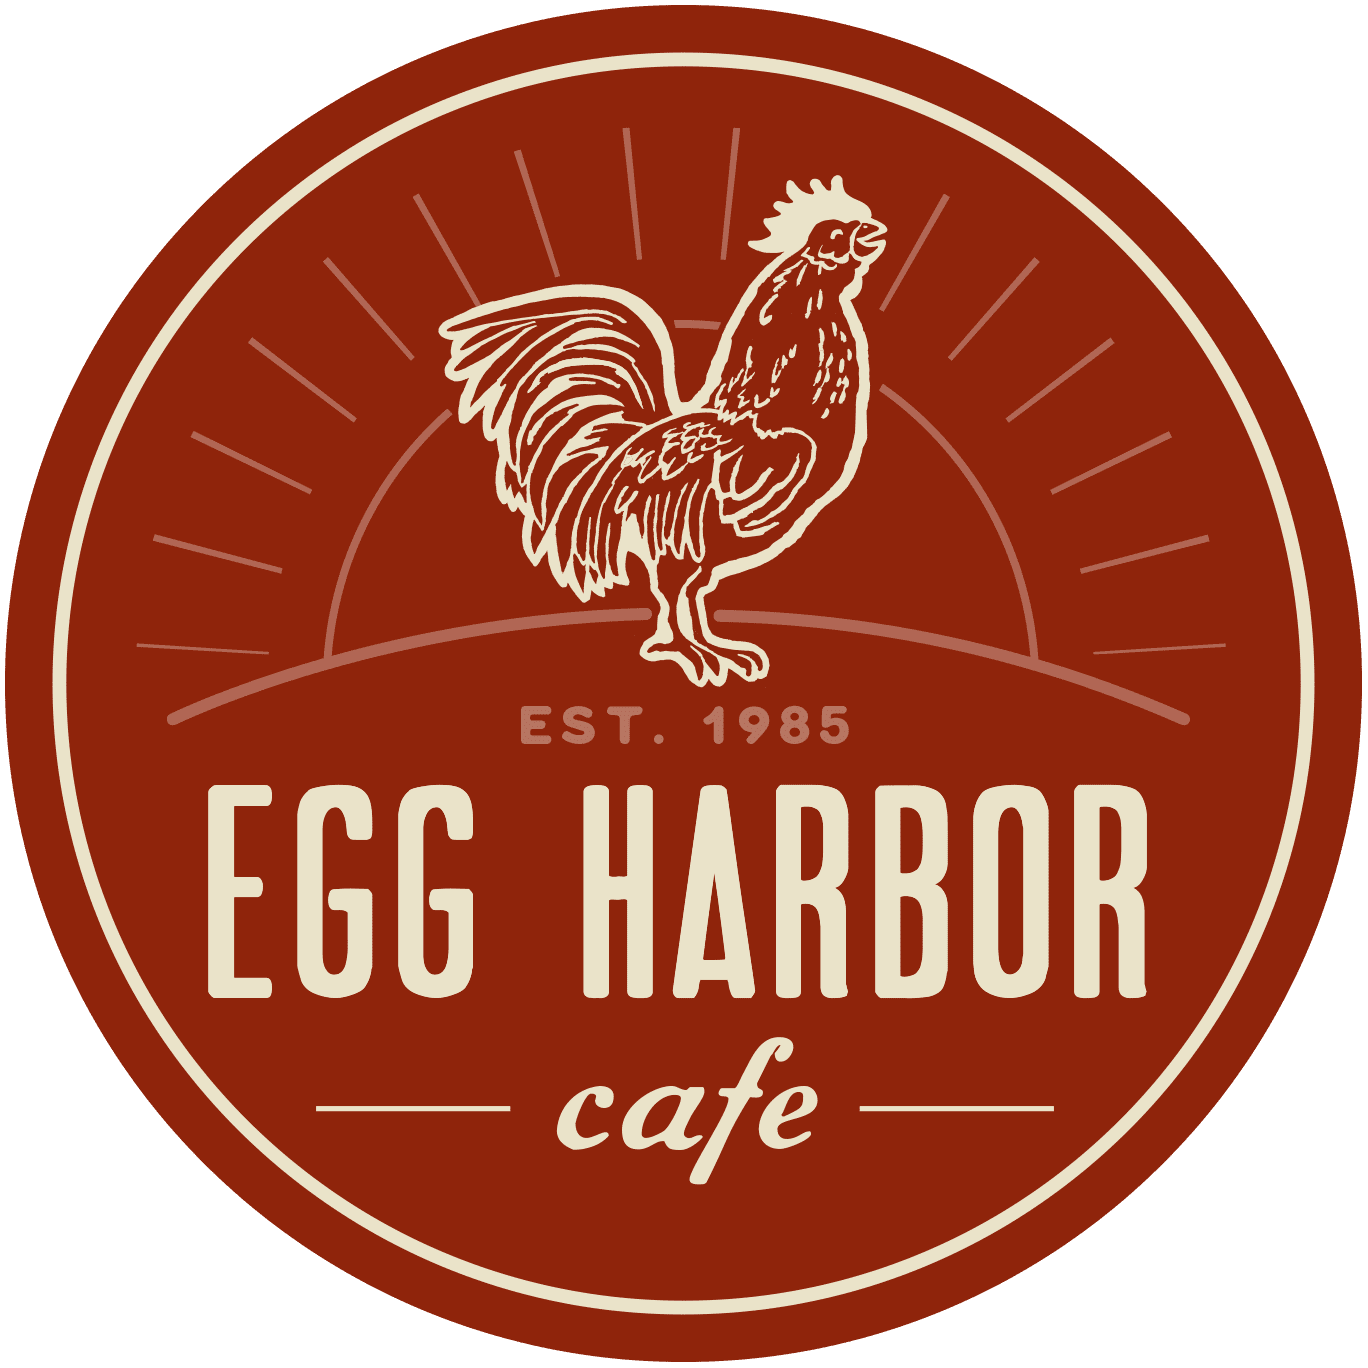 eggharborcafe.com